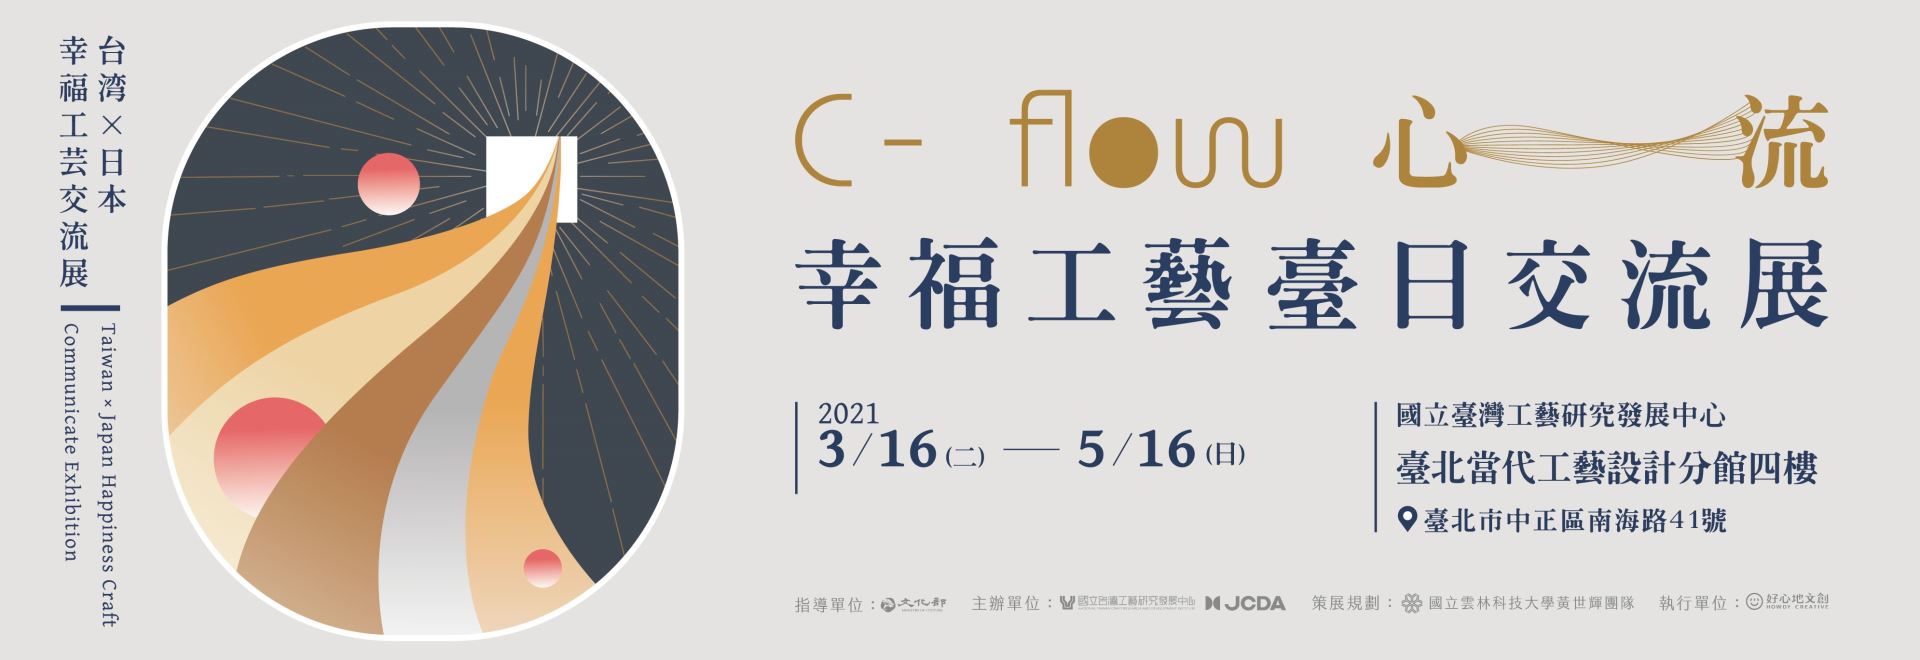 C-flow・心流－幸福工藝臺日交流聯展